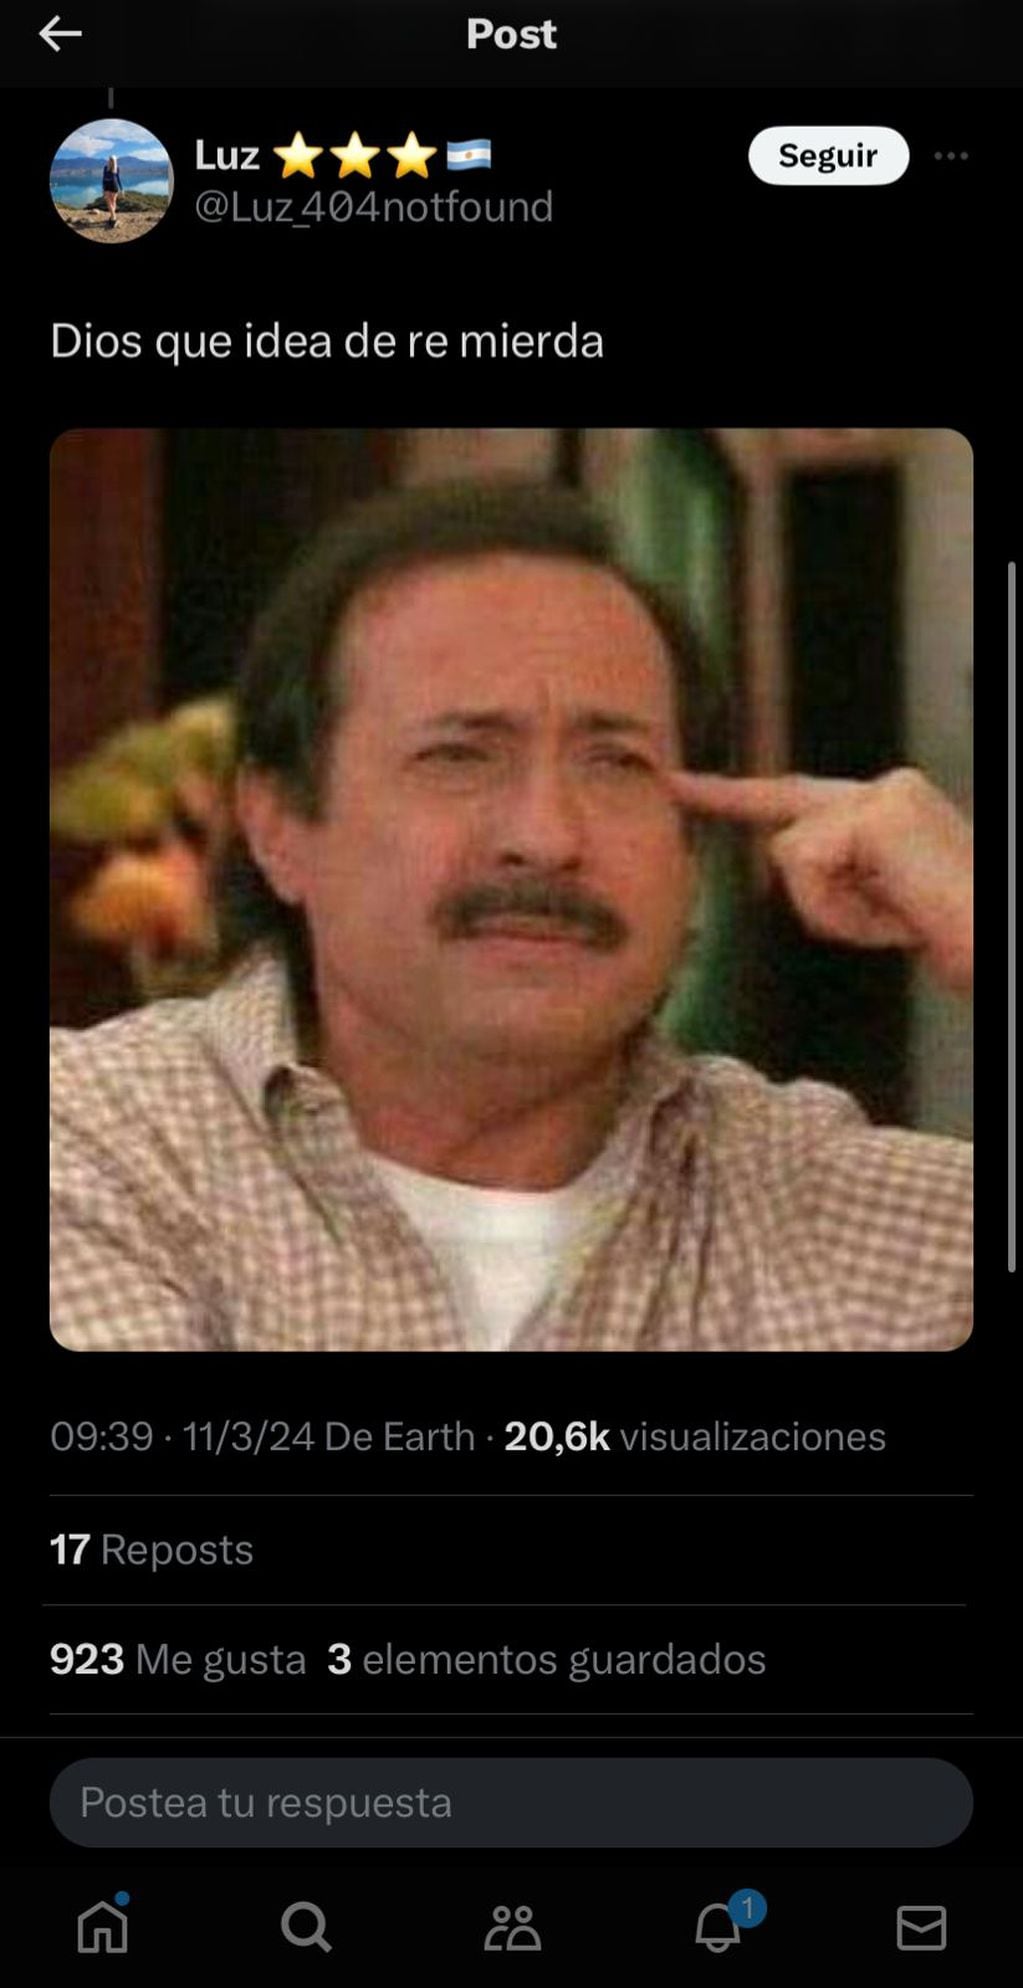 Los memes por el anuncio de Santiago del Moro sobre Thiago y Daniela de Gran Hermano. Captura de pantalla.